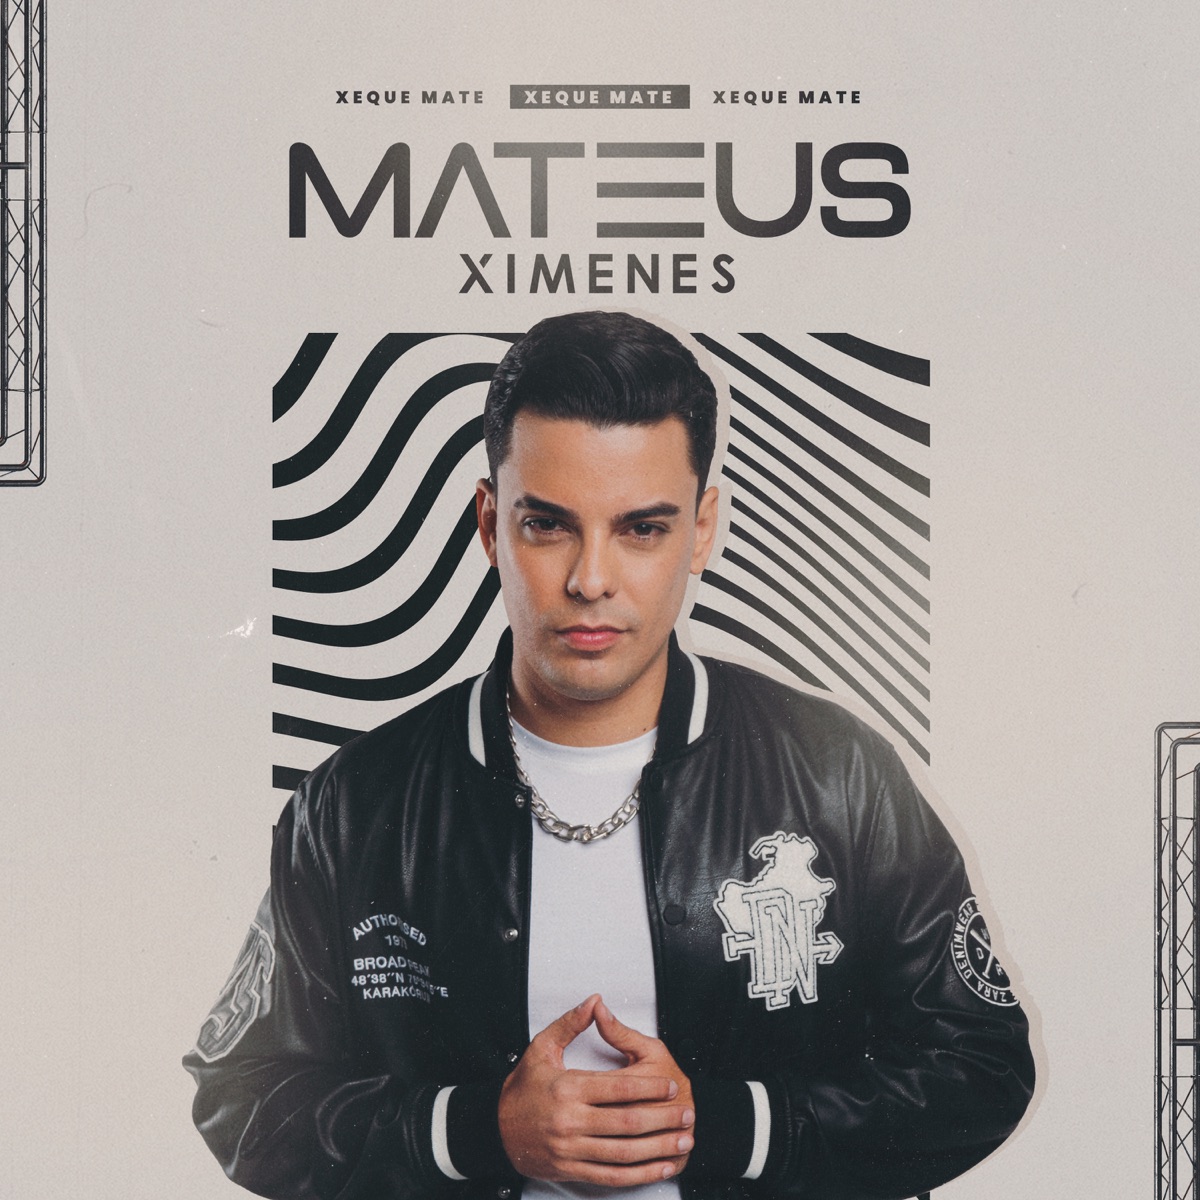 Xeque Mate - Album by Mateus Ximenes - Apple Music